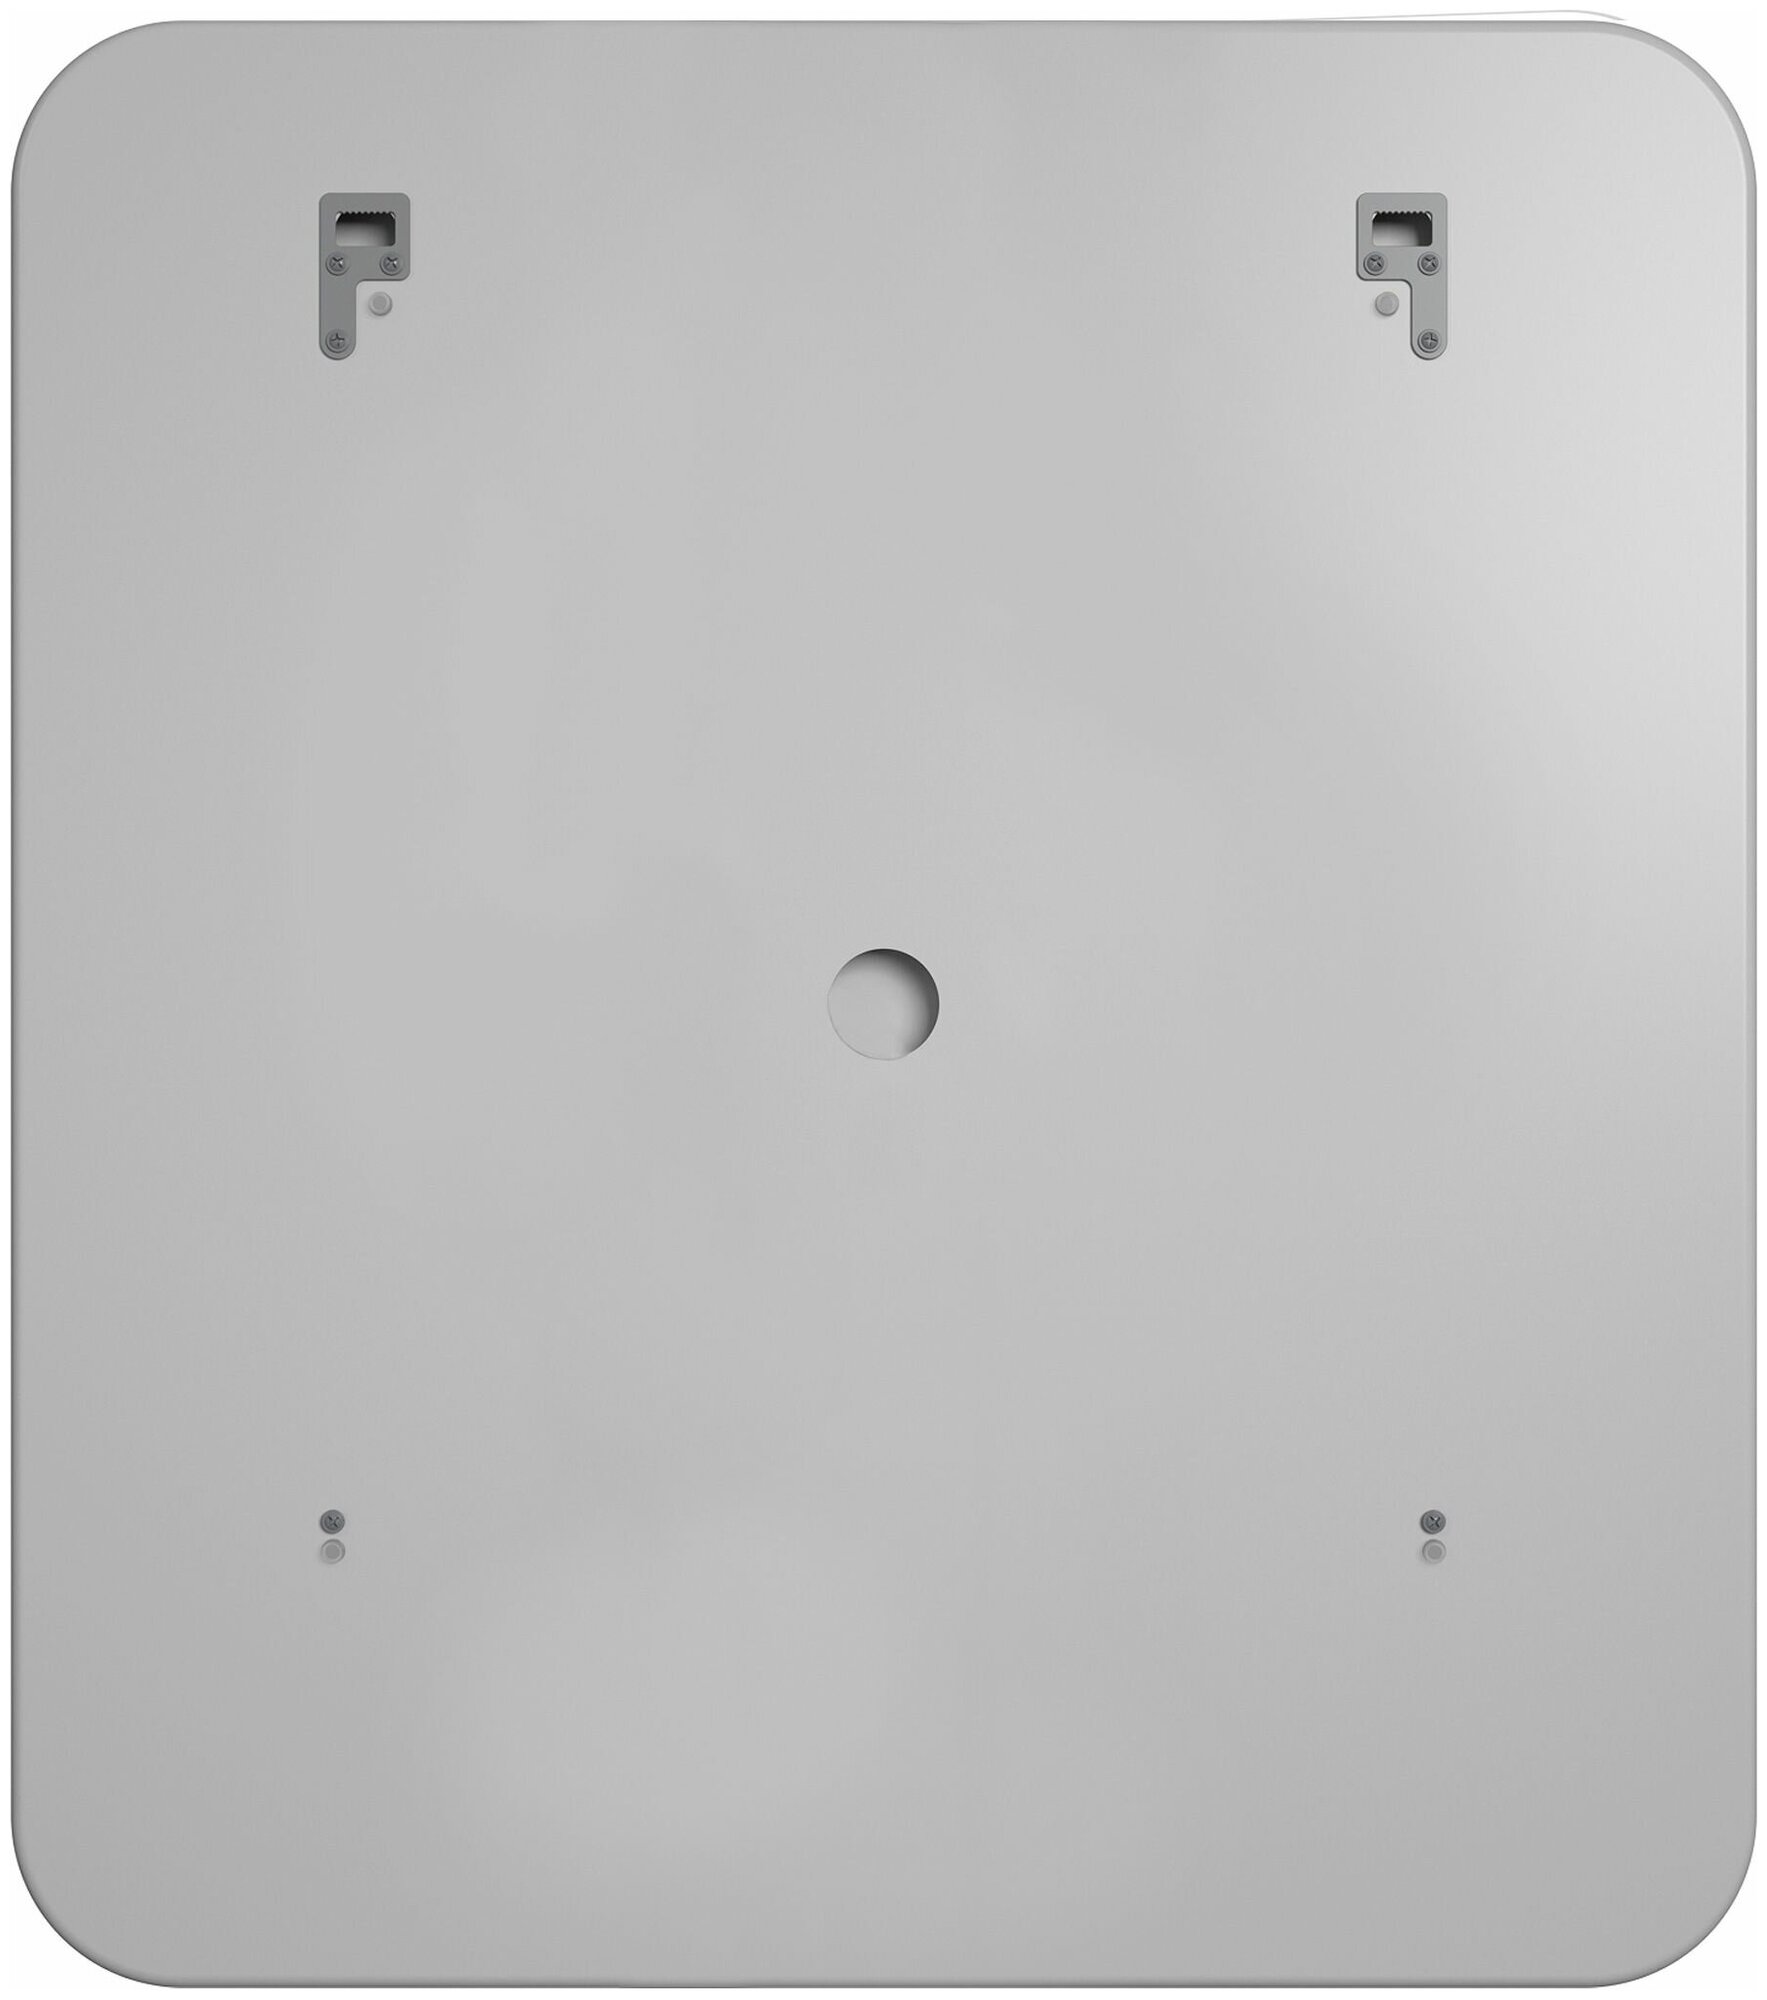 Зеркало для ванной с LED подсветкой и сенсором Reflection Blessed 800х900 RF5429BL